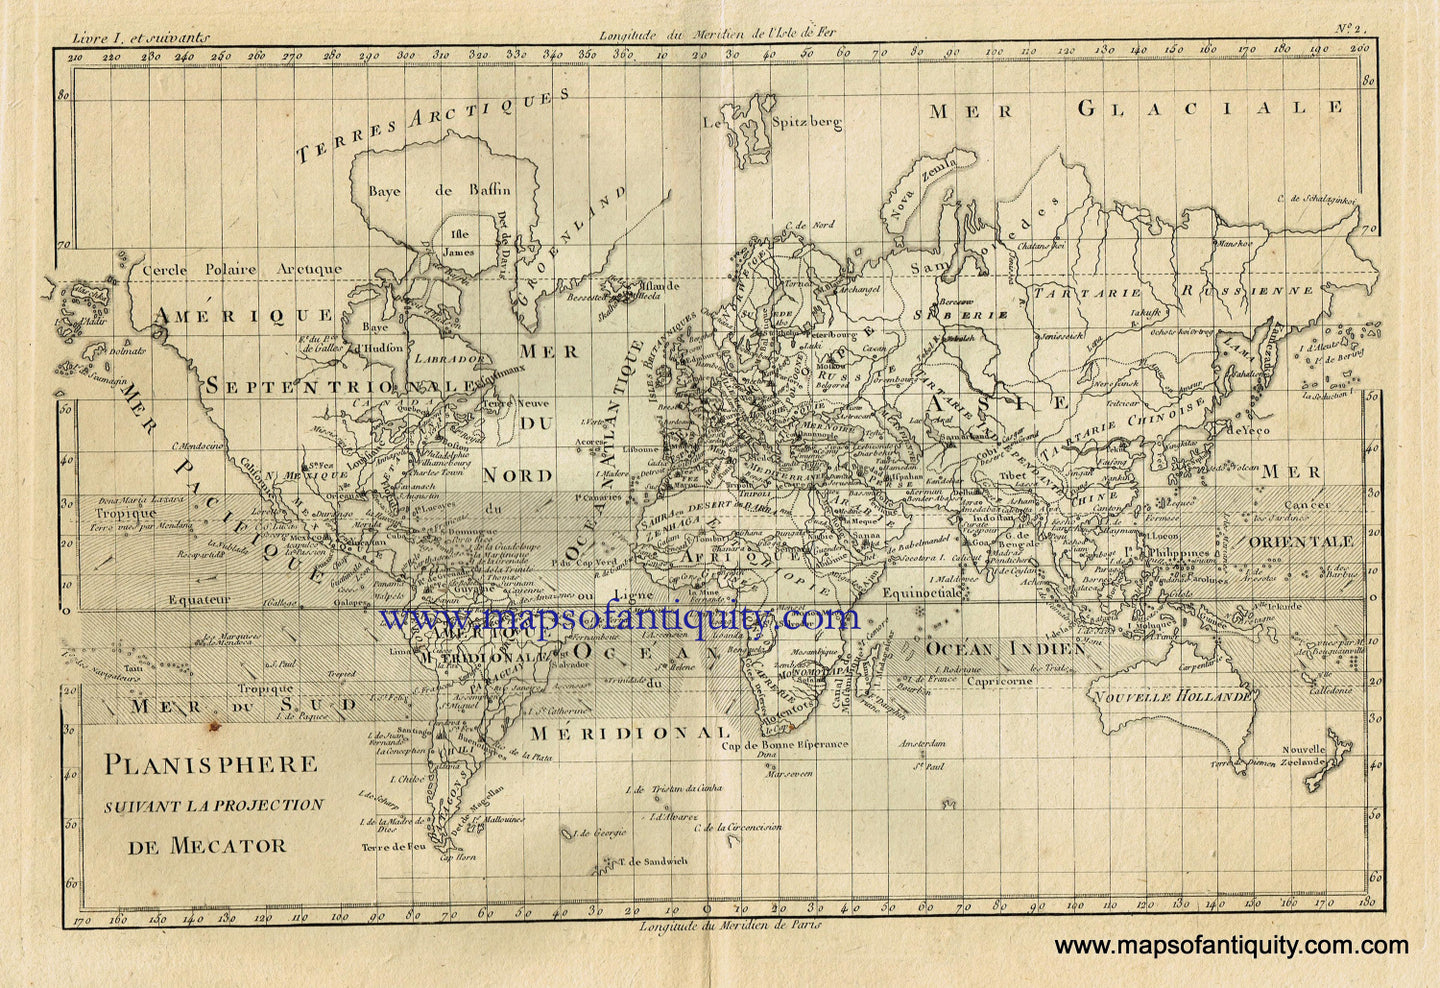 Le premier planisphère avec projection de Mercator